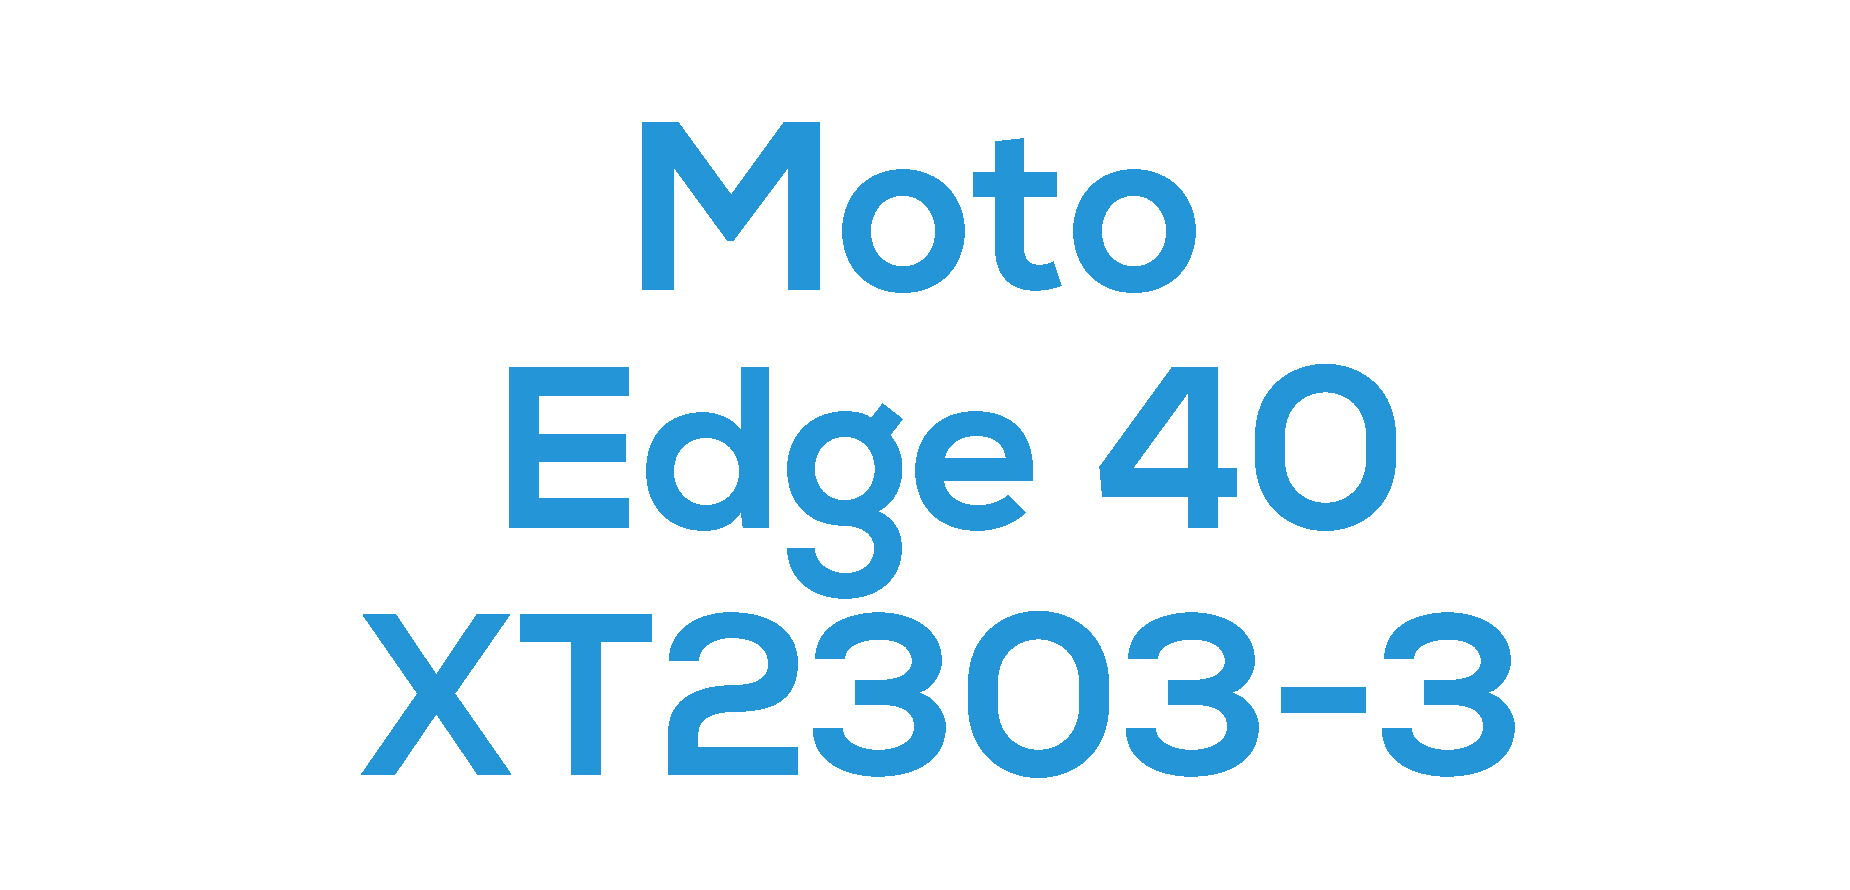 Edge 40 (XT2303-3)